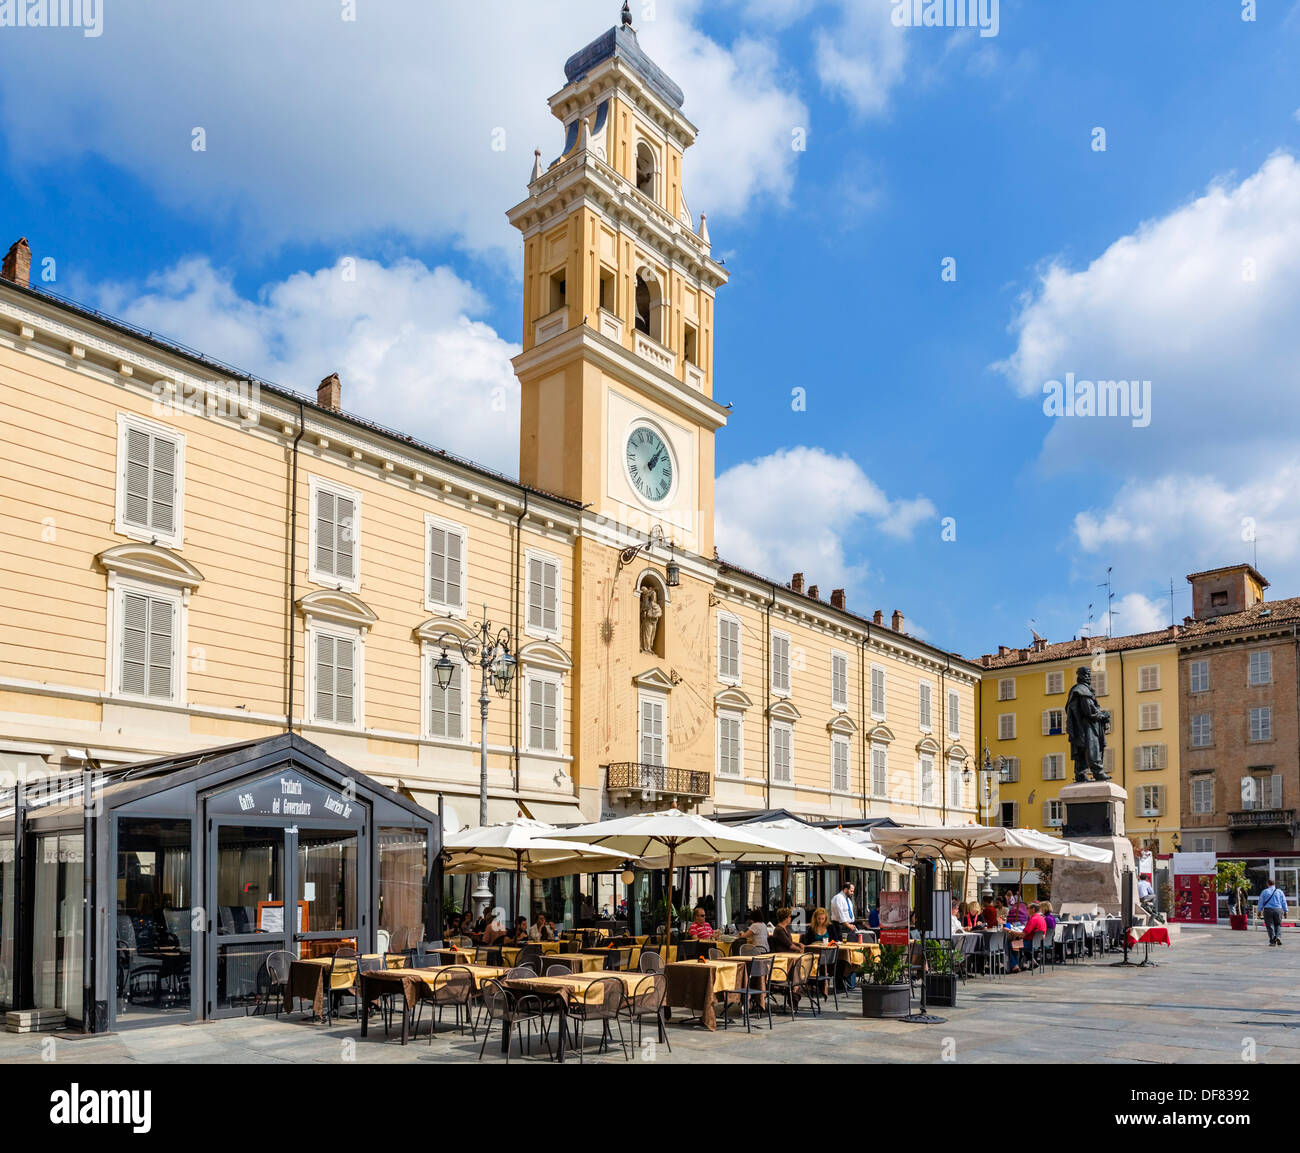 Restaurant in front of The Palazzo del Governatore in the historic city centre, Piazza Garibaldi, Parma, Emilia Romagna, Italy Stock Photo